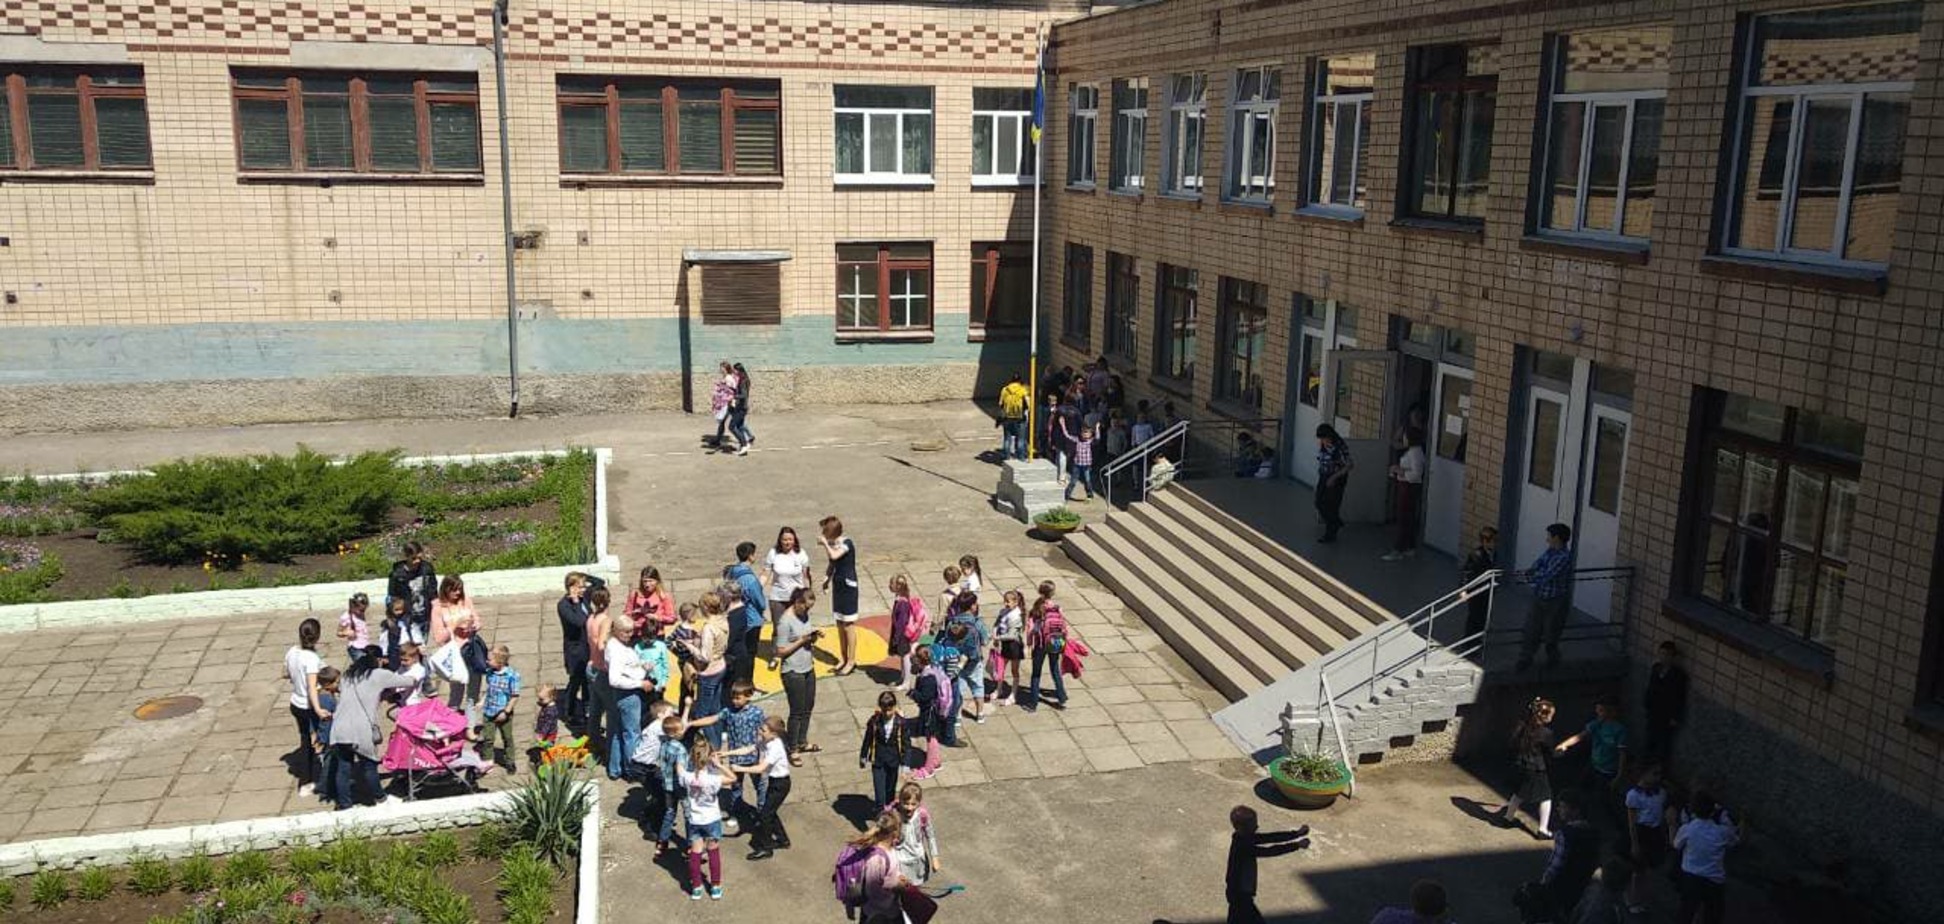 Неизвестное вещество в школе: в Николаеве эвакуировали 400 учеников, 36 - в больнице